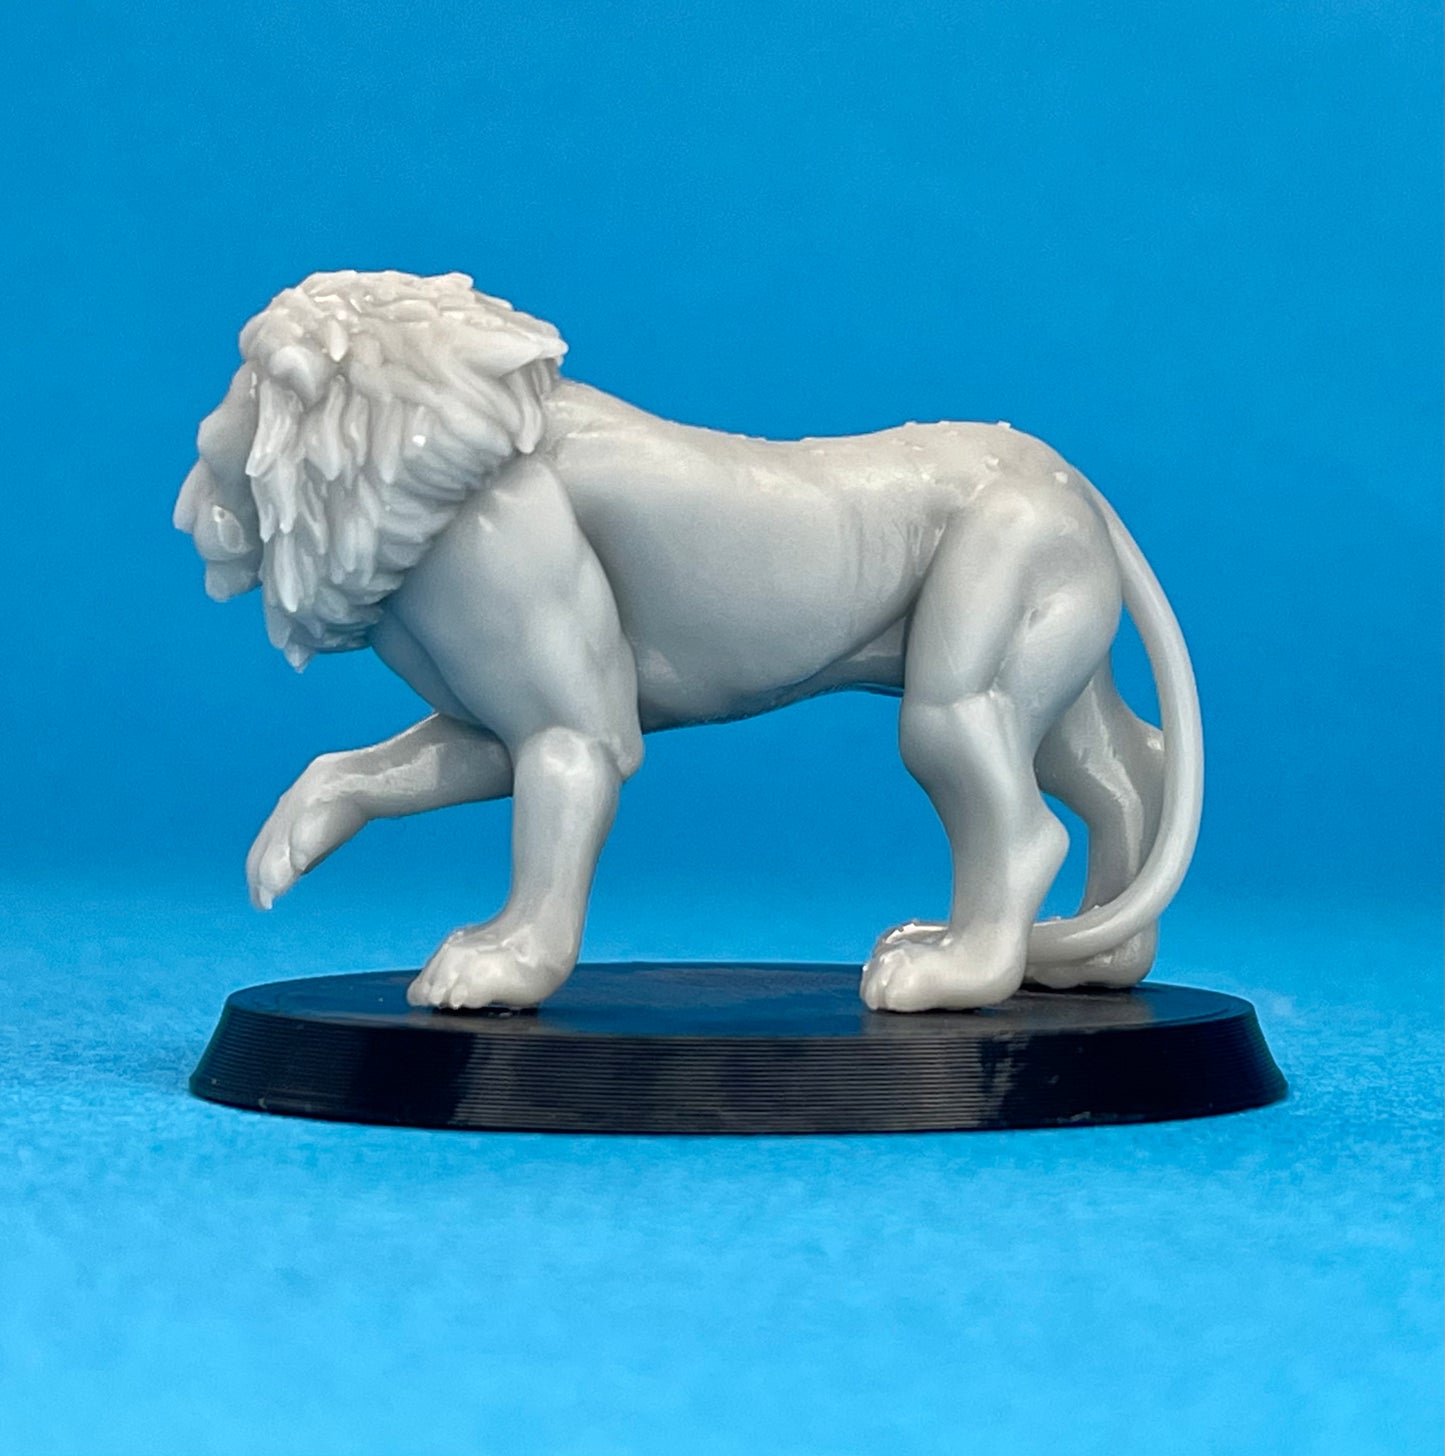 Lion Miniature